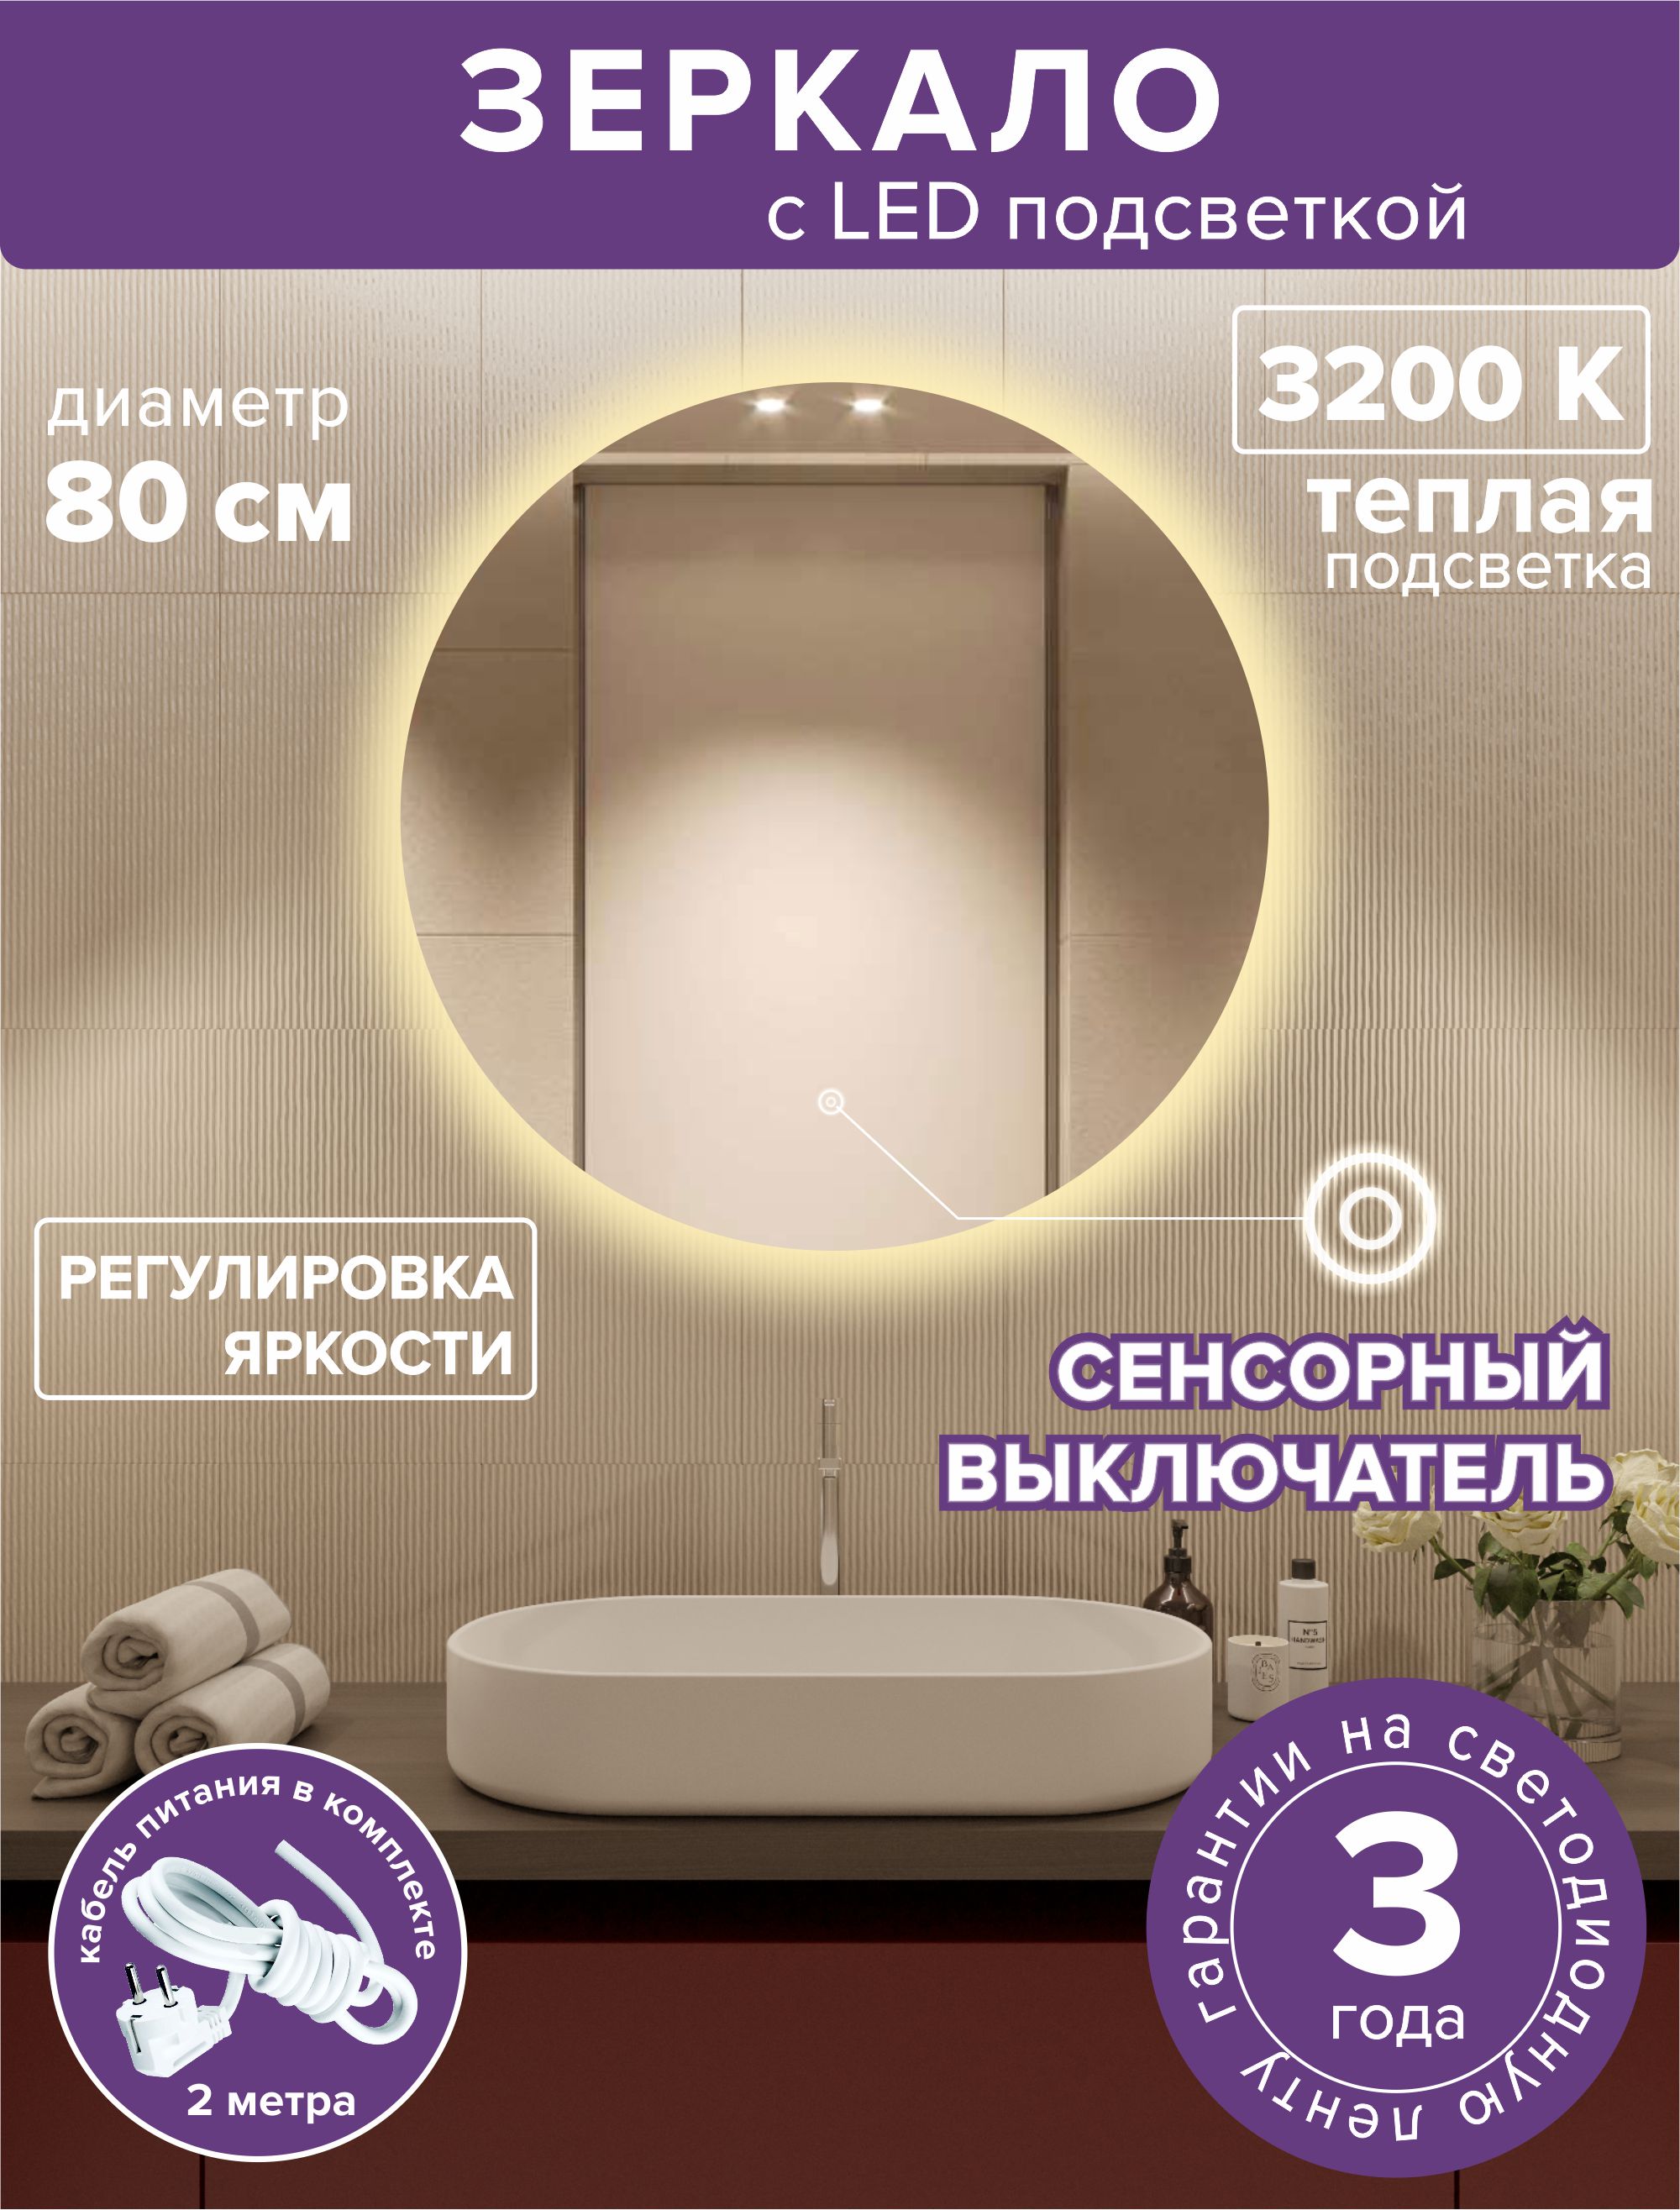 Зеркало для ванной Alfa Mirrors MNa-8Vt круглое, теплая подсветка, 80см светодиодная гирлянда rich led 10 м 100 led 24в соединяемая влагозащитный колпачок теплая белая прозрачный провод rl s10c 24v ct ww